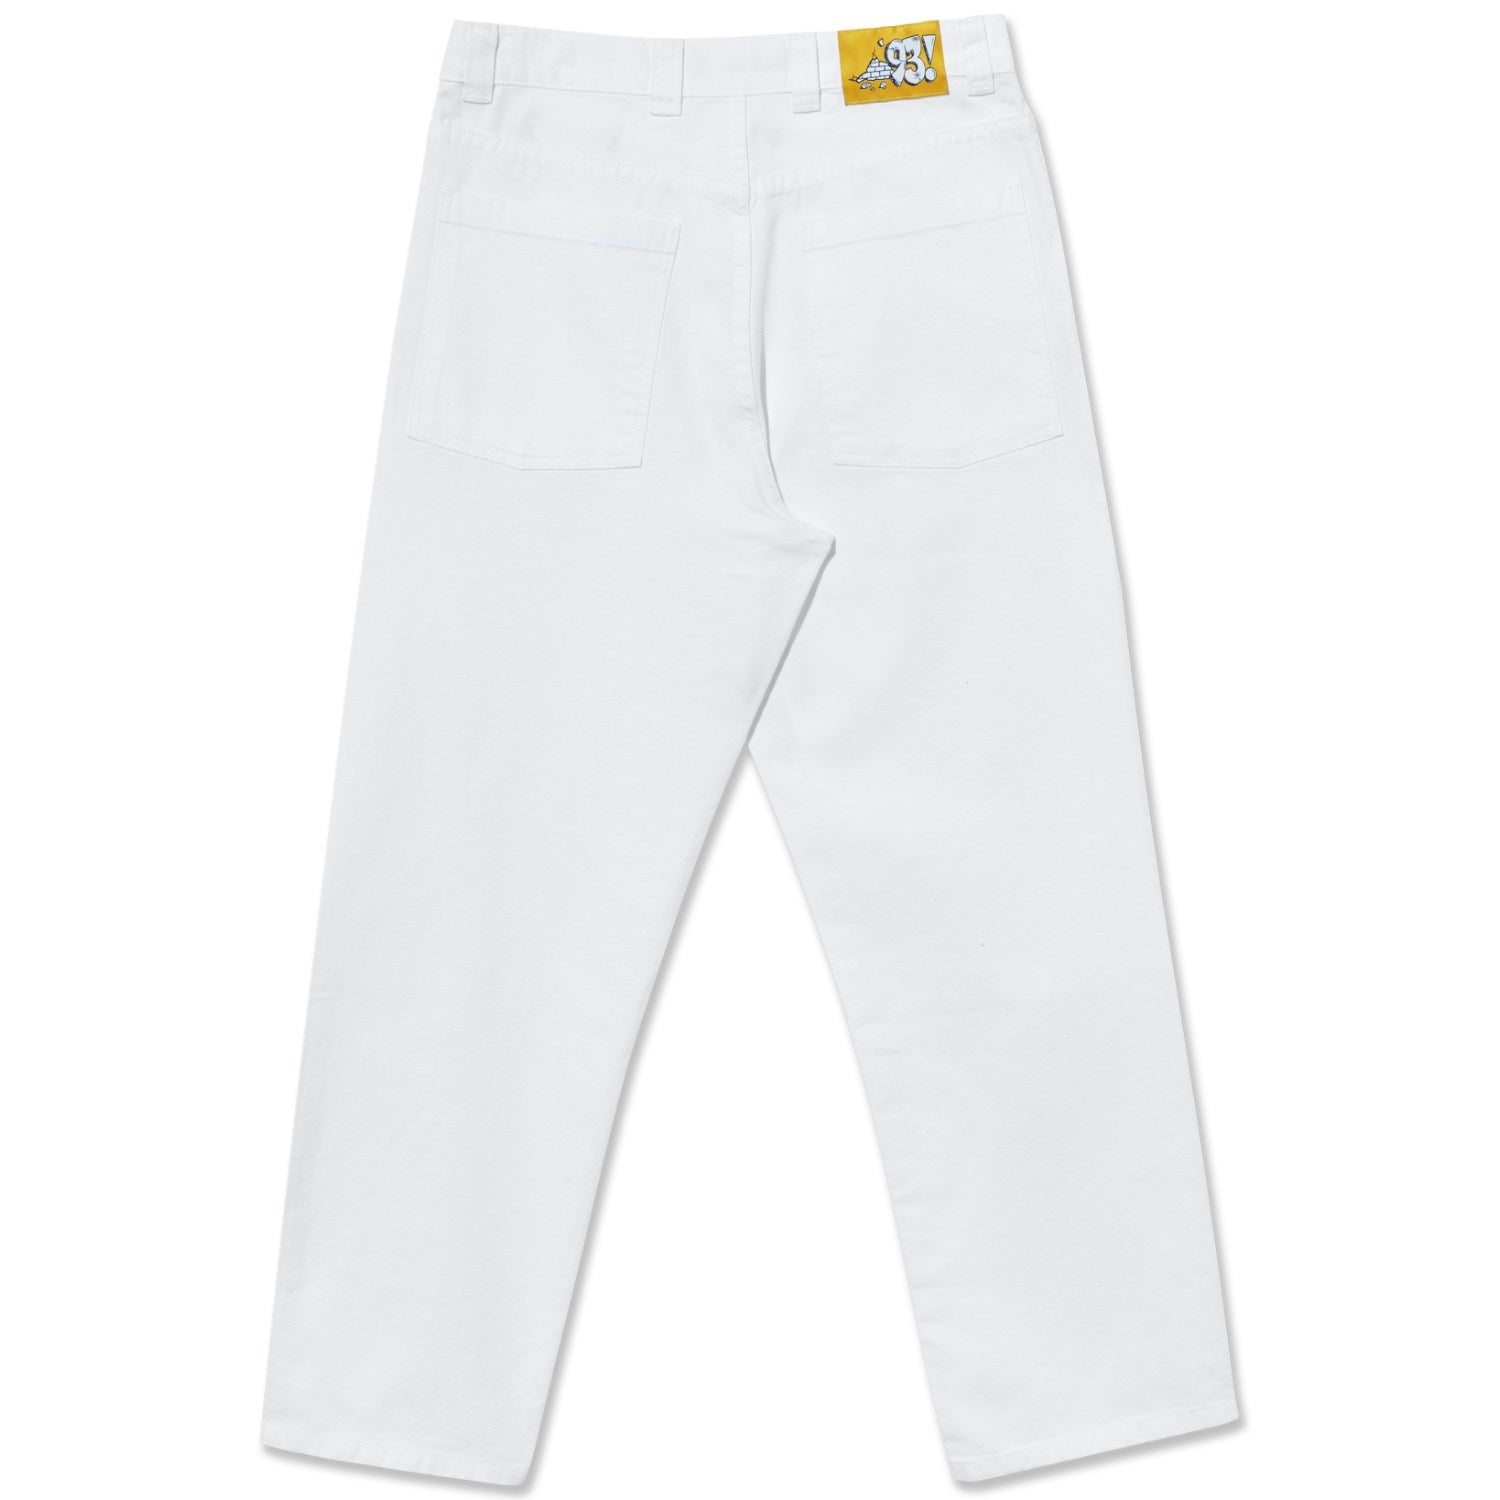 Polar 93! Work Pants - White